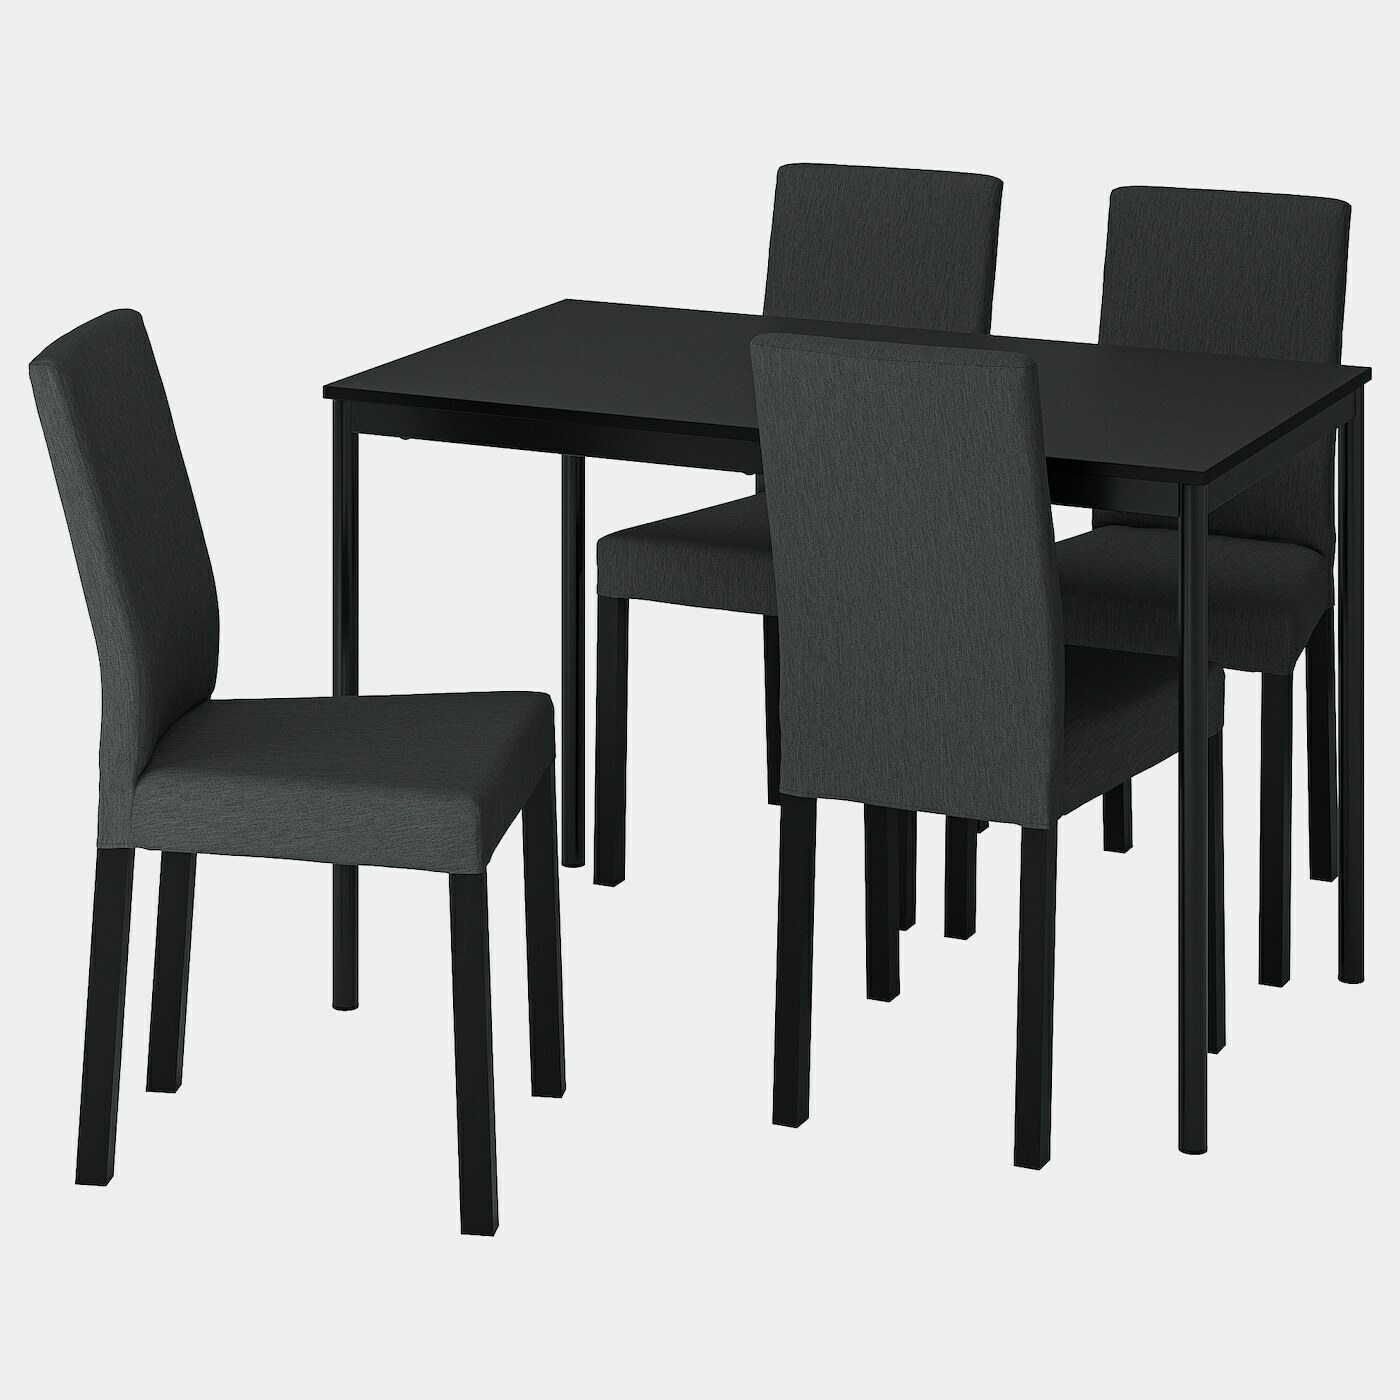 SANDSBERG / KÄTTIL Tisch und 4 Stühle  -  - Möbel Ideen für dein Zuhause von Home Trends. Möbel Trends von Social Media Influencer für dein Skandi Zuhause.